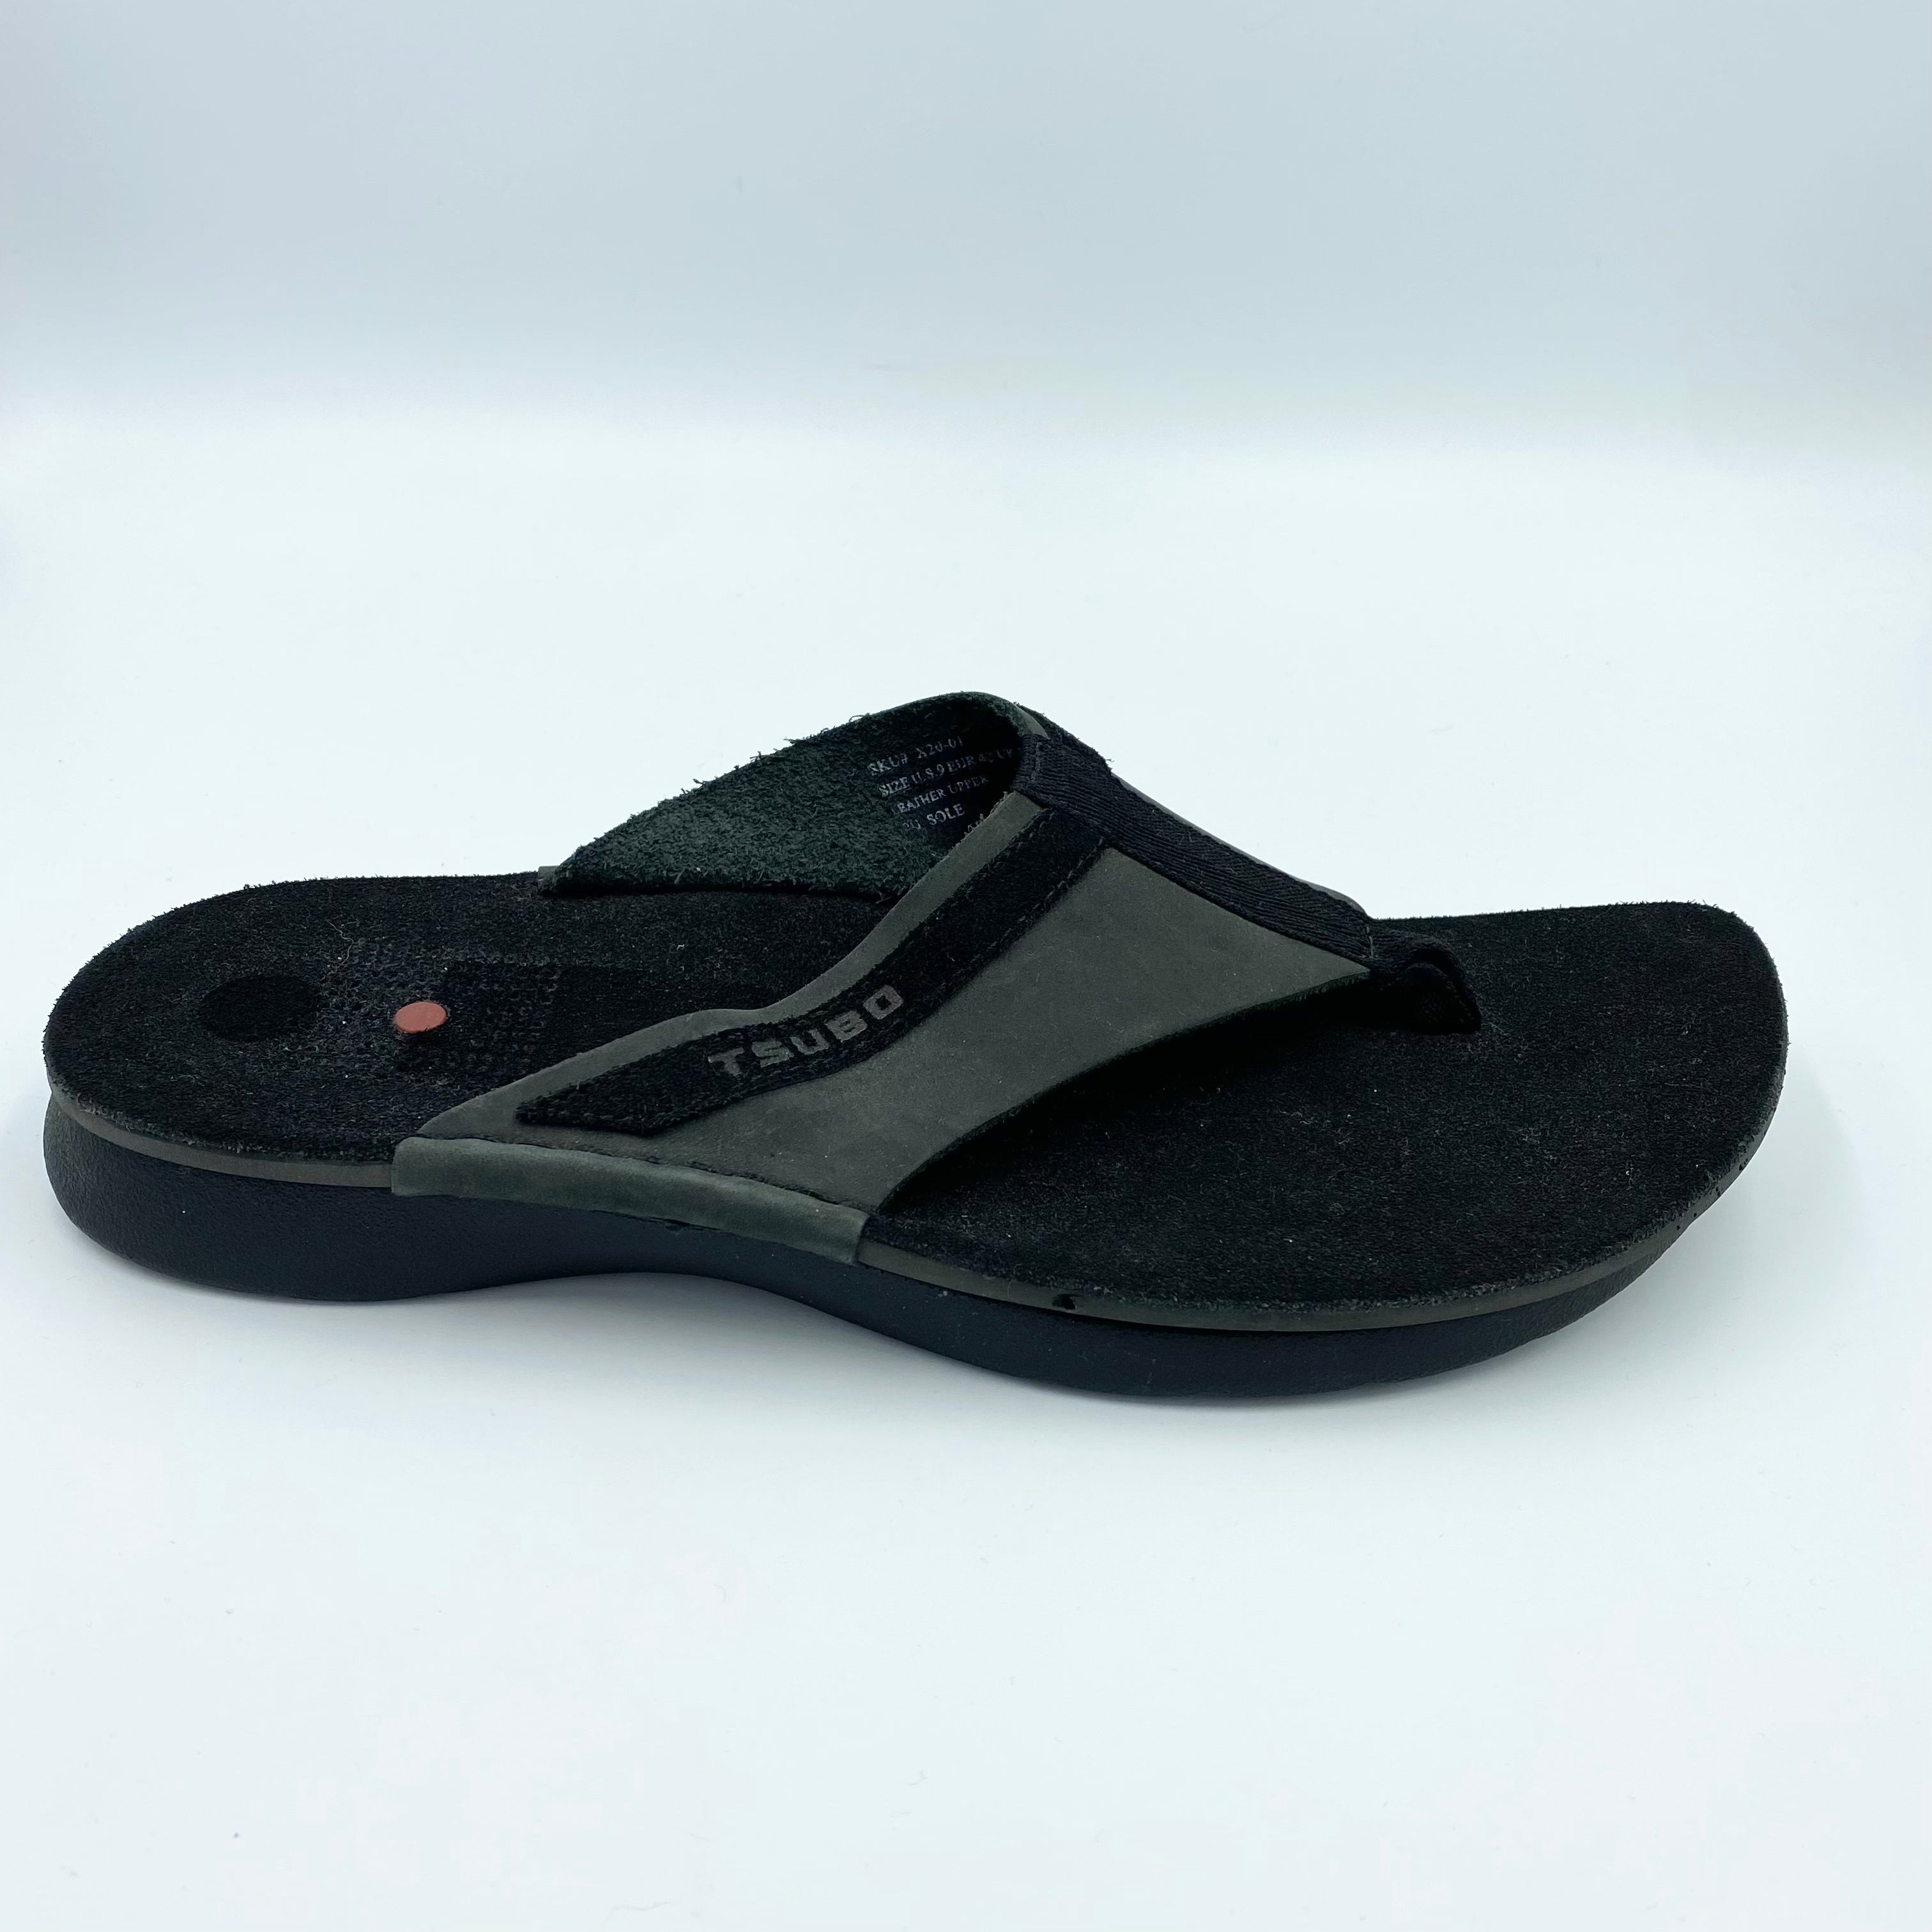 TSUBO Plex Sandal